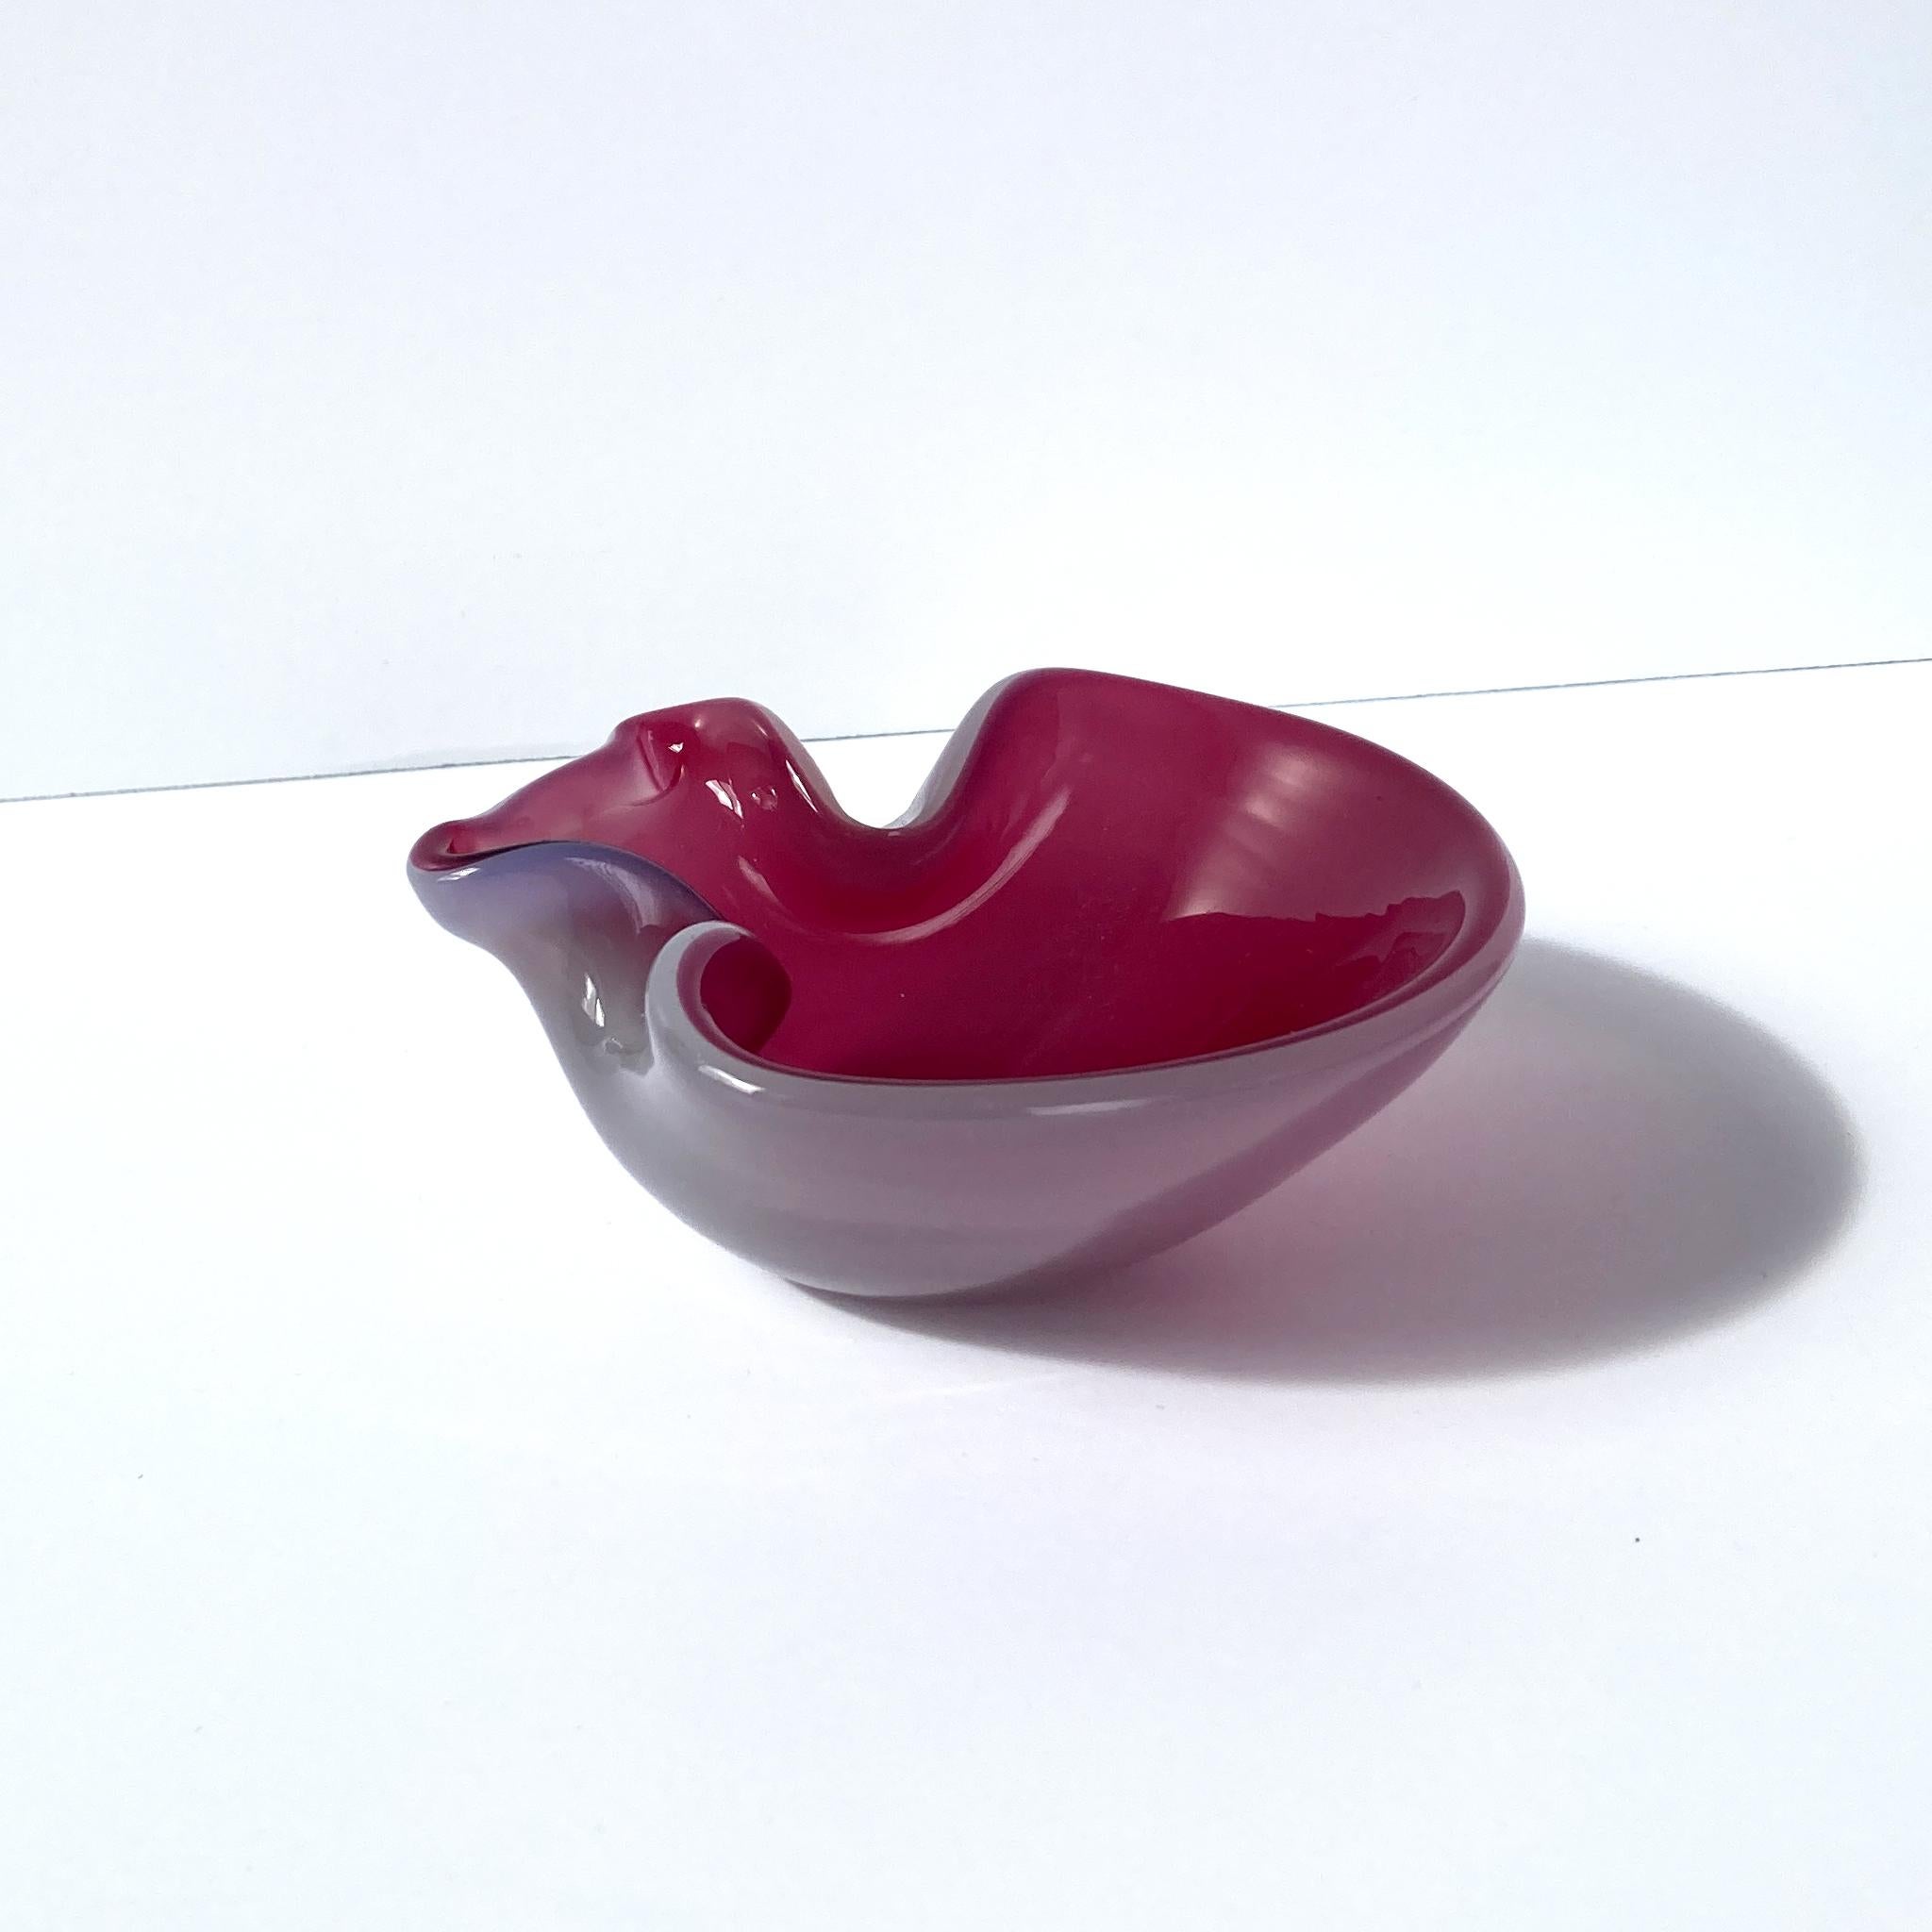 Atemberaubende, einzigartige venezianische mundgeblasene Glasvideotasche. Wunderschönes Cranberryrosa innen und hellrosa Opal außen, wodurch ein leuchtender Mauve-Ton entsteht. Das Glas glitzert, wenn das Licht in verschiedenen Winkeln auf dieses